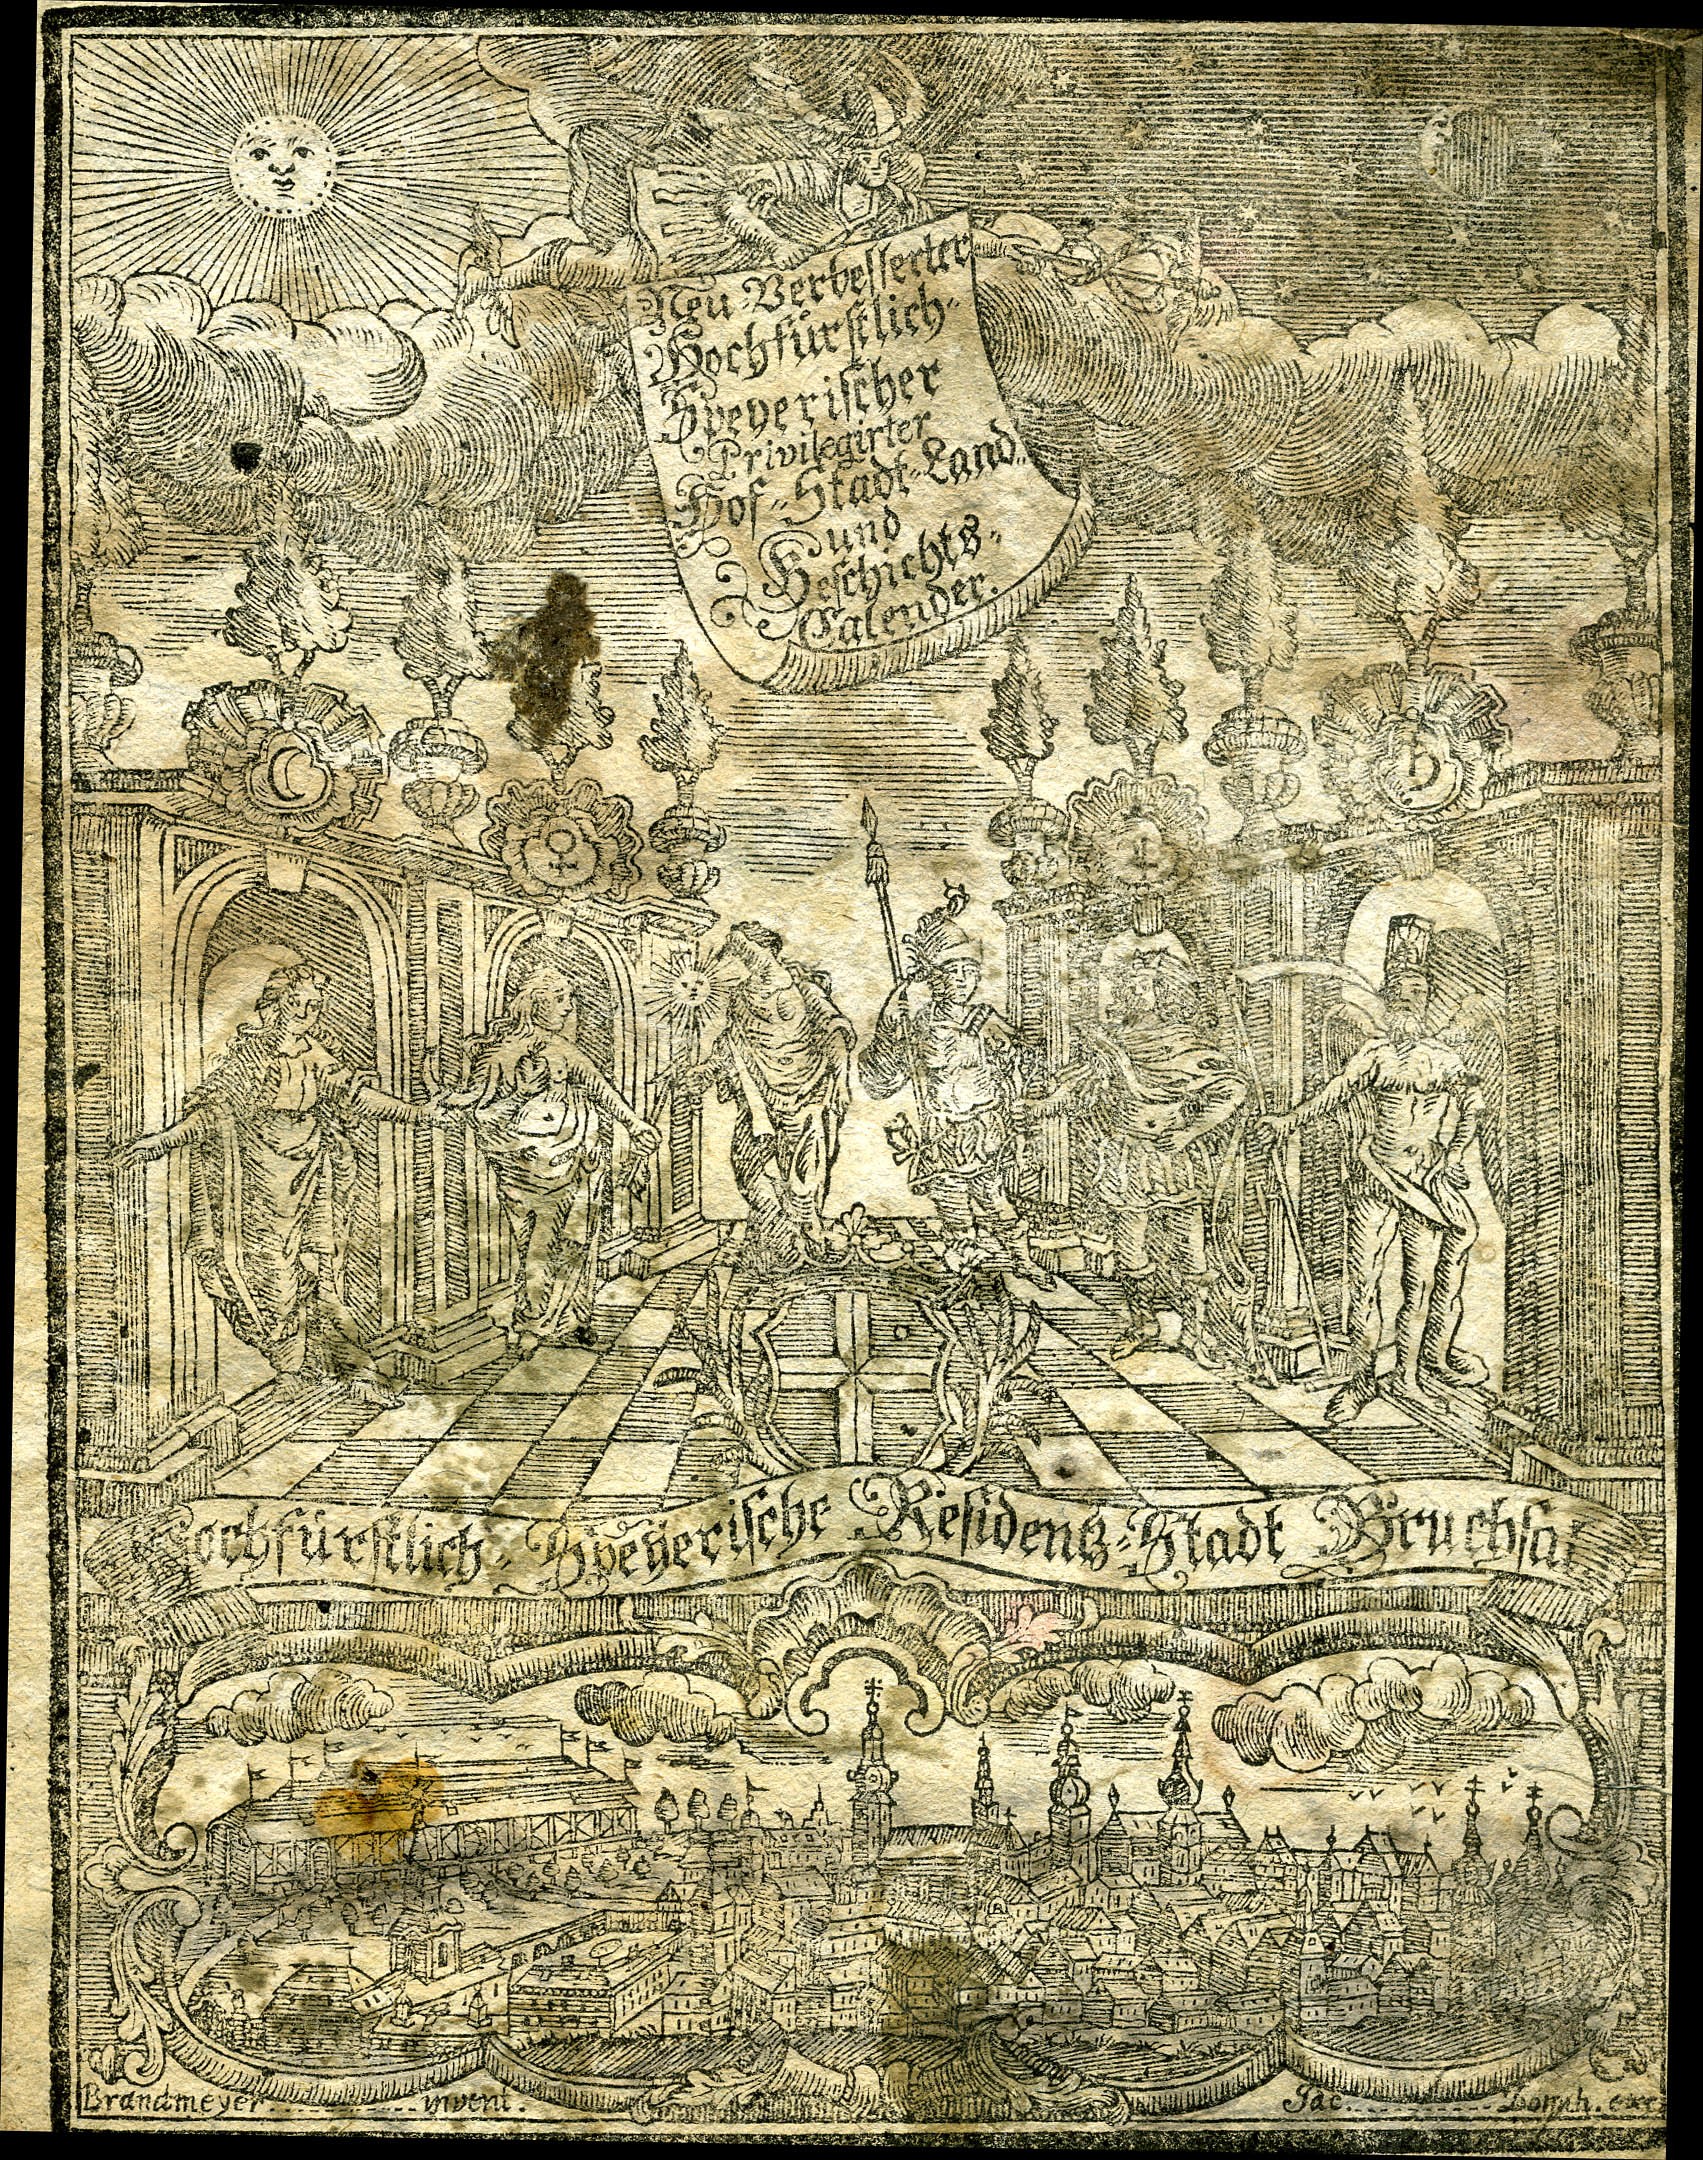 Hochfürstlicher Speyerischer Hof-,Stadt-,Land- und Geschichtskalender für das Jahr 1782 (Historisches Museum der Pfalz, Speyer CC BY)